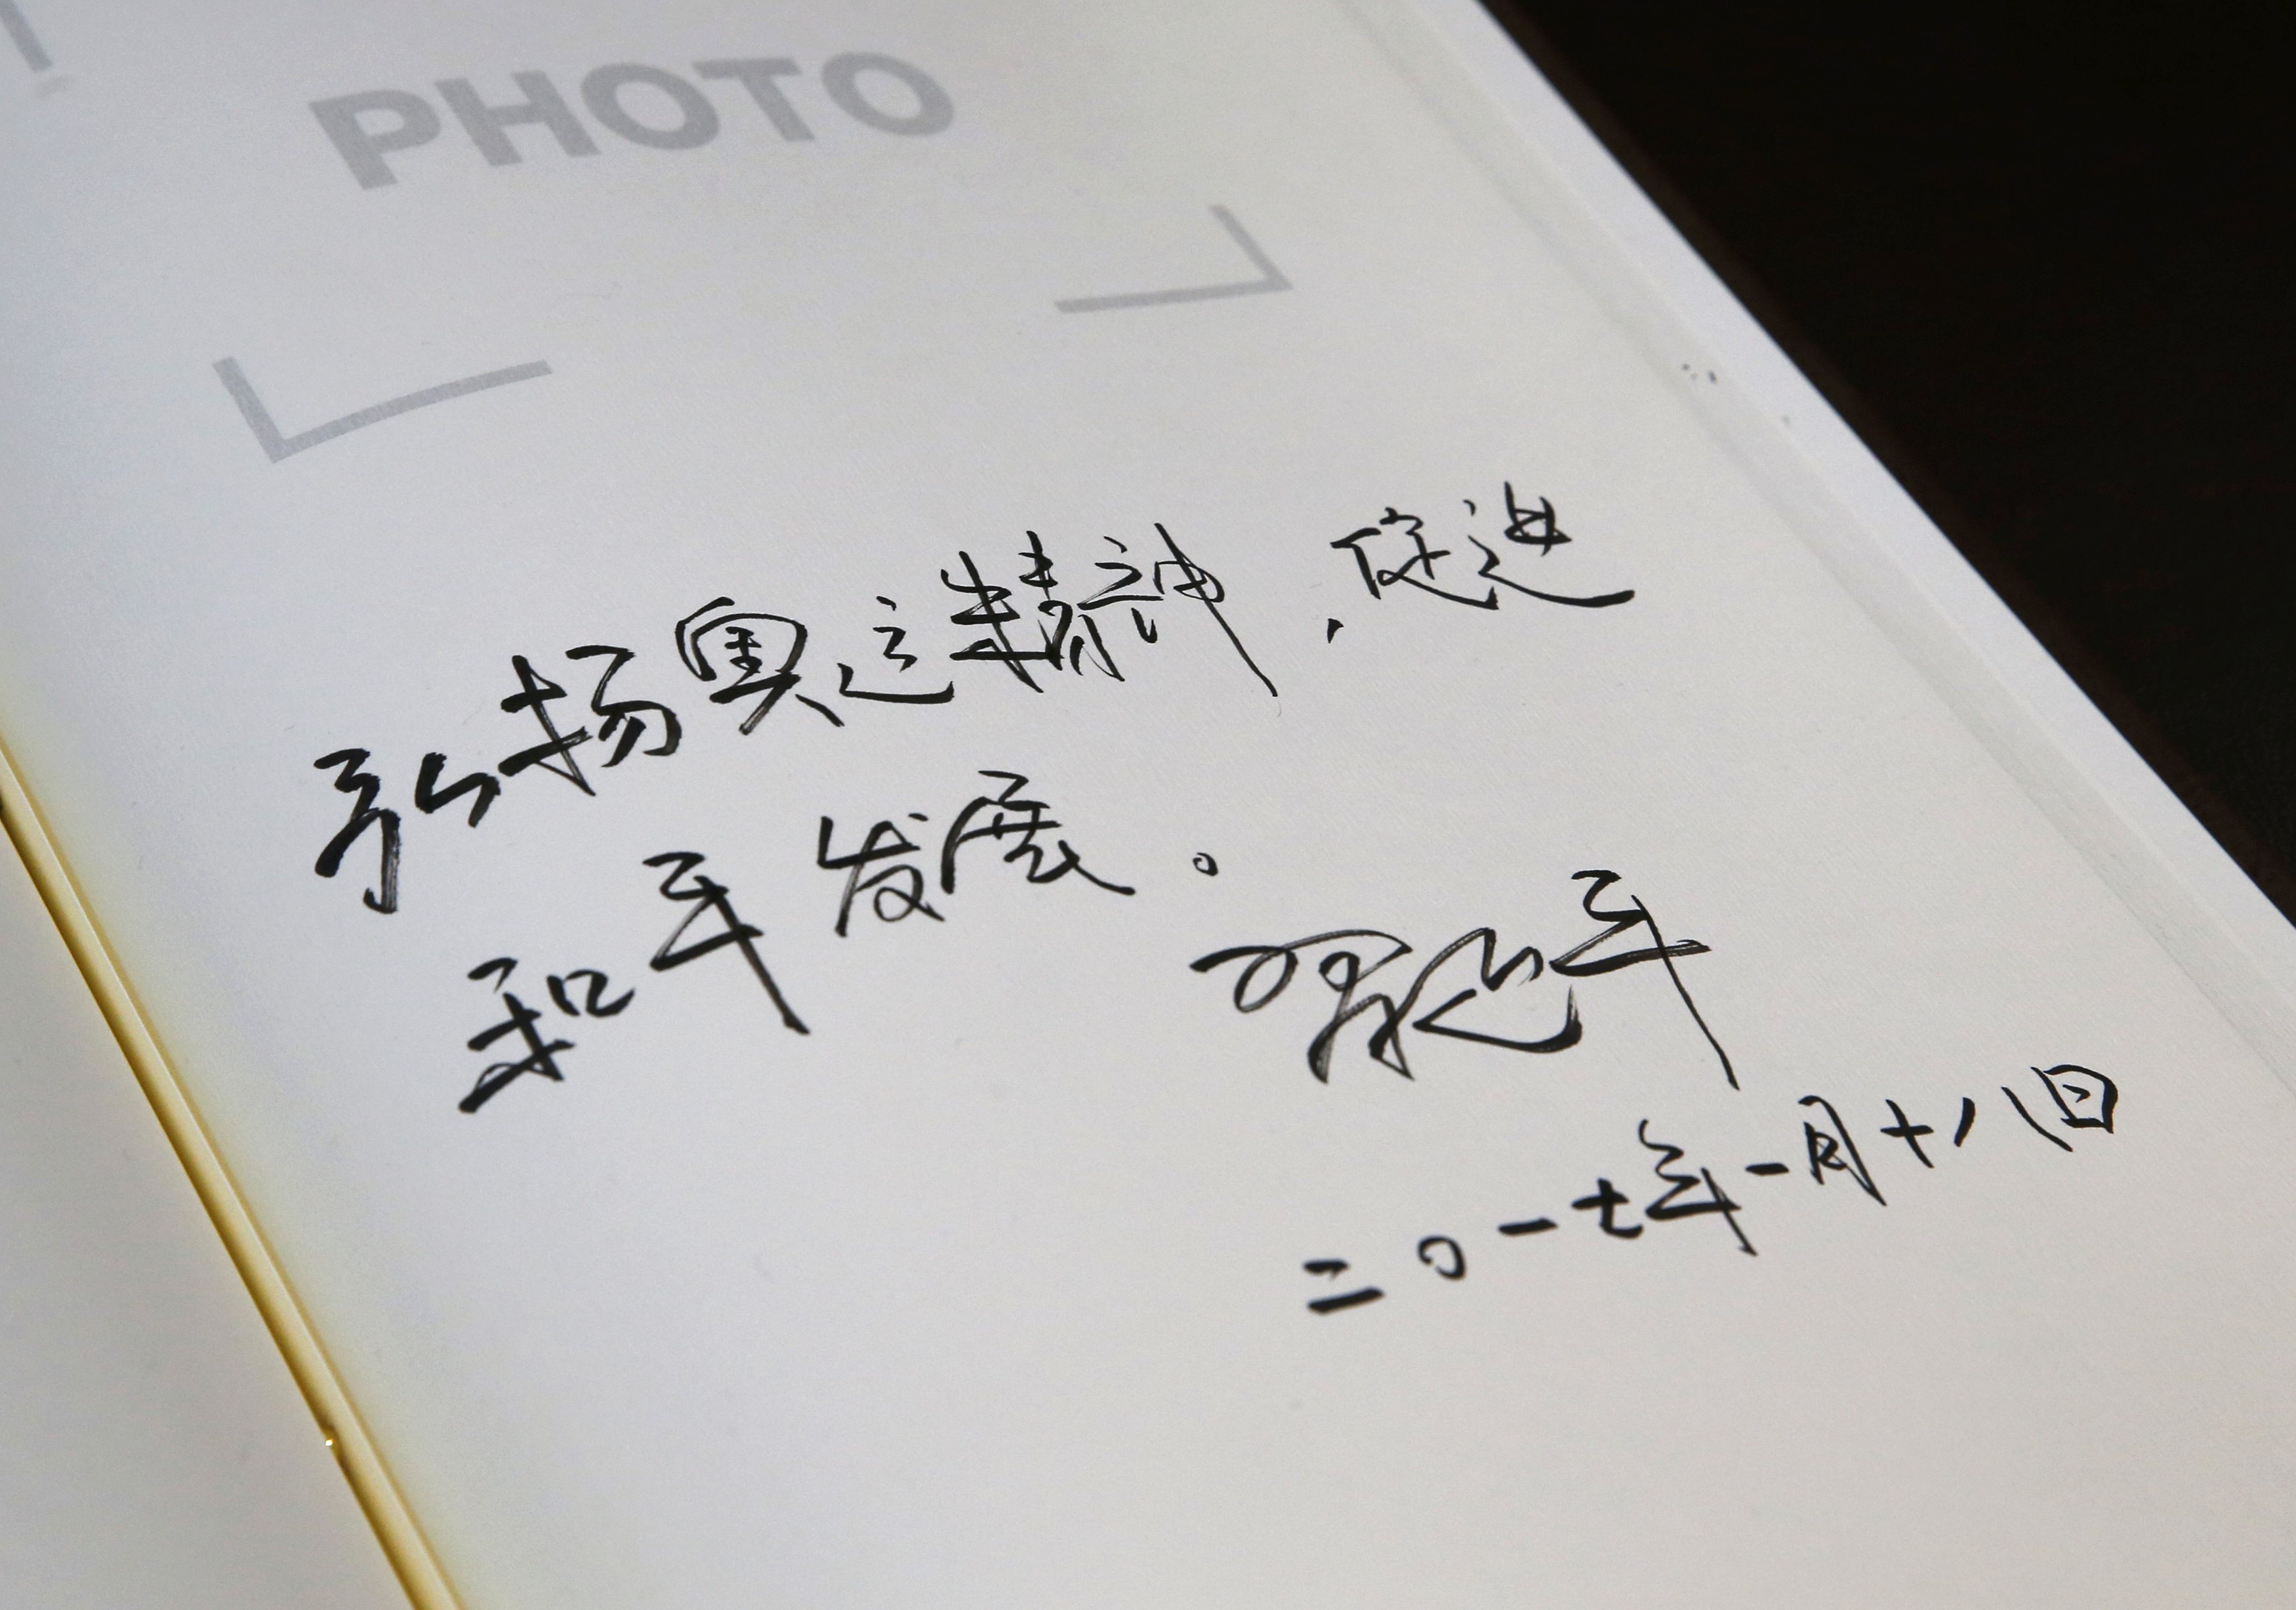 الكلمة التذكارية للرئيس الصينى فى دفتر المتحف الأوليمبى بسويسرا